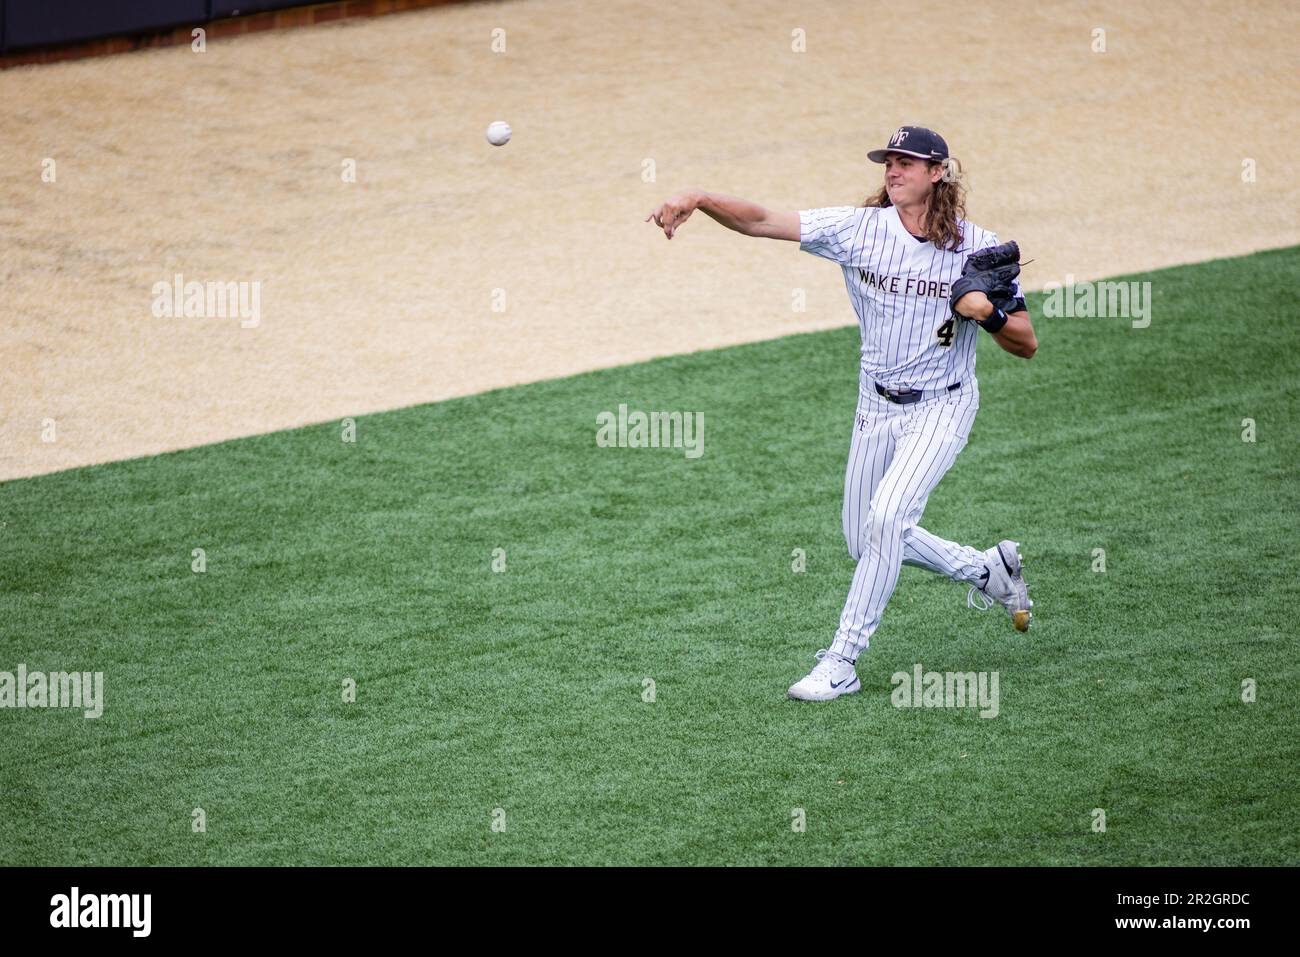 18 maggio 2023: Il lanciatore della Wake Forest Rhett Lowder (4) si scalda prima dell'accampamento di baseball contro il Virginia Tech al David F. Couch Ballpark di Winston-Salem, NC. (Adeal) Foto Stock